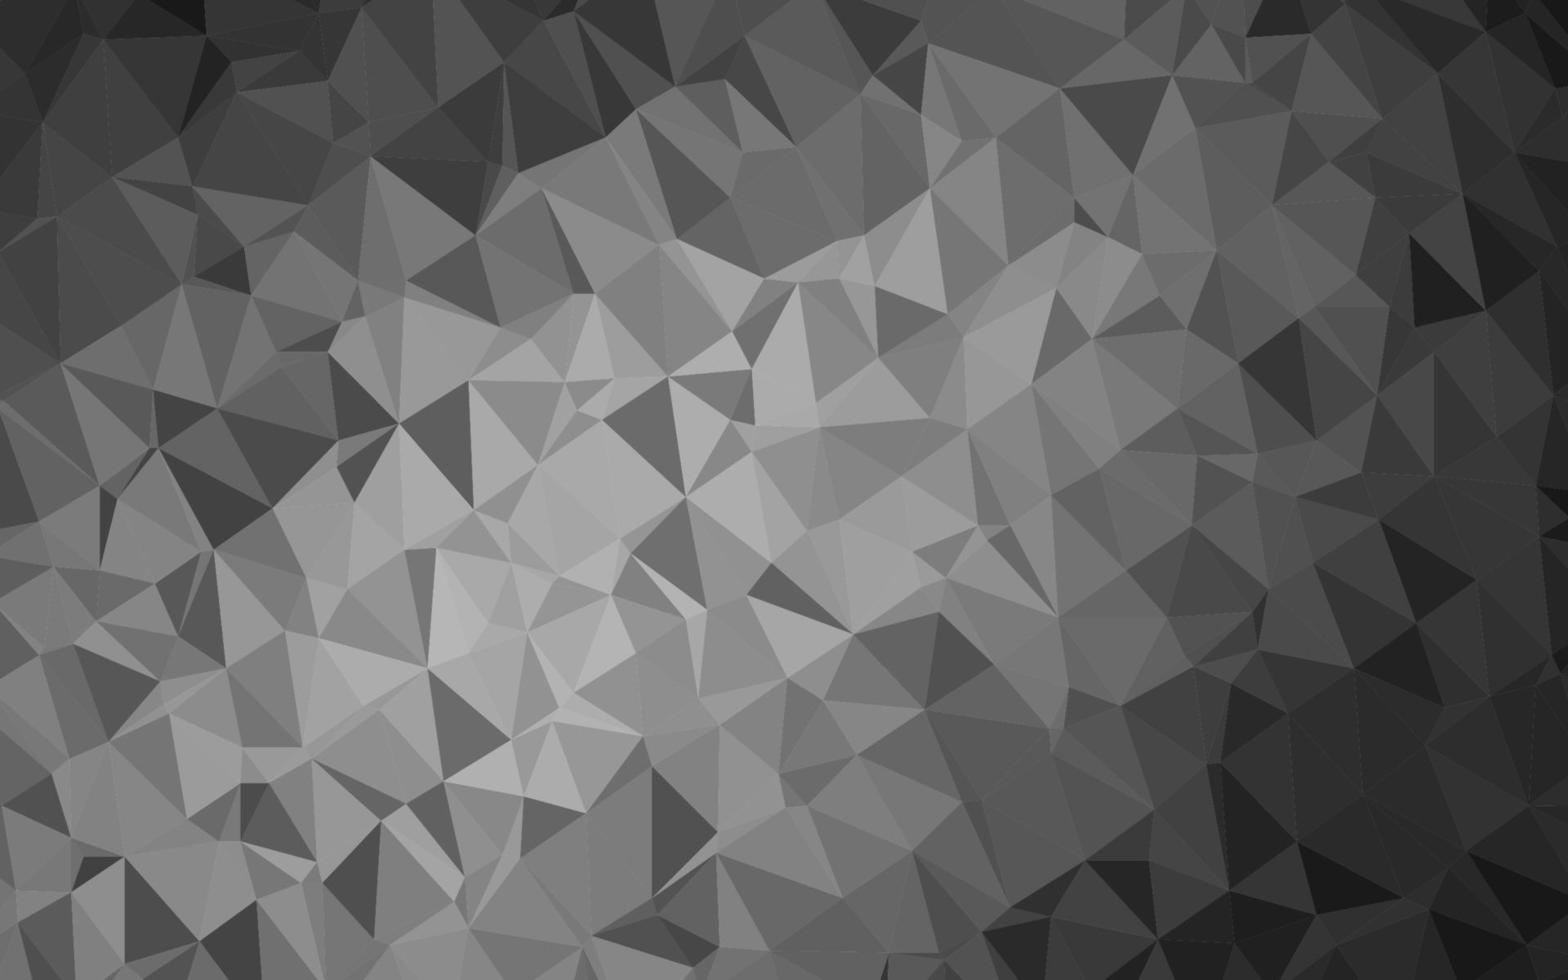 Plantilla de triángulo borroso de vector gris plateado oscuro.